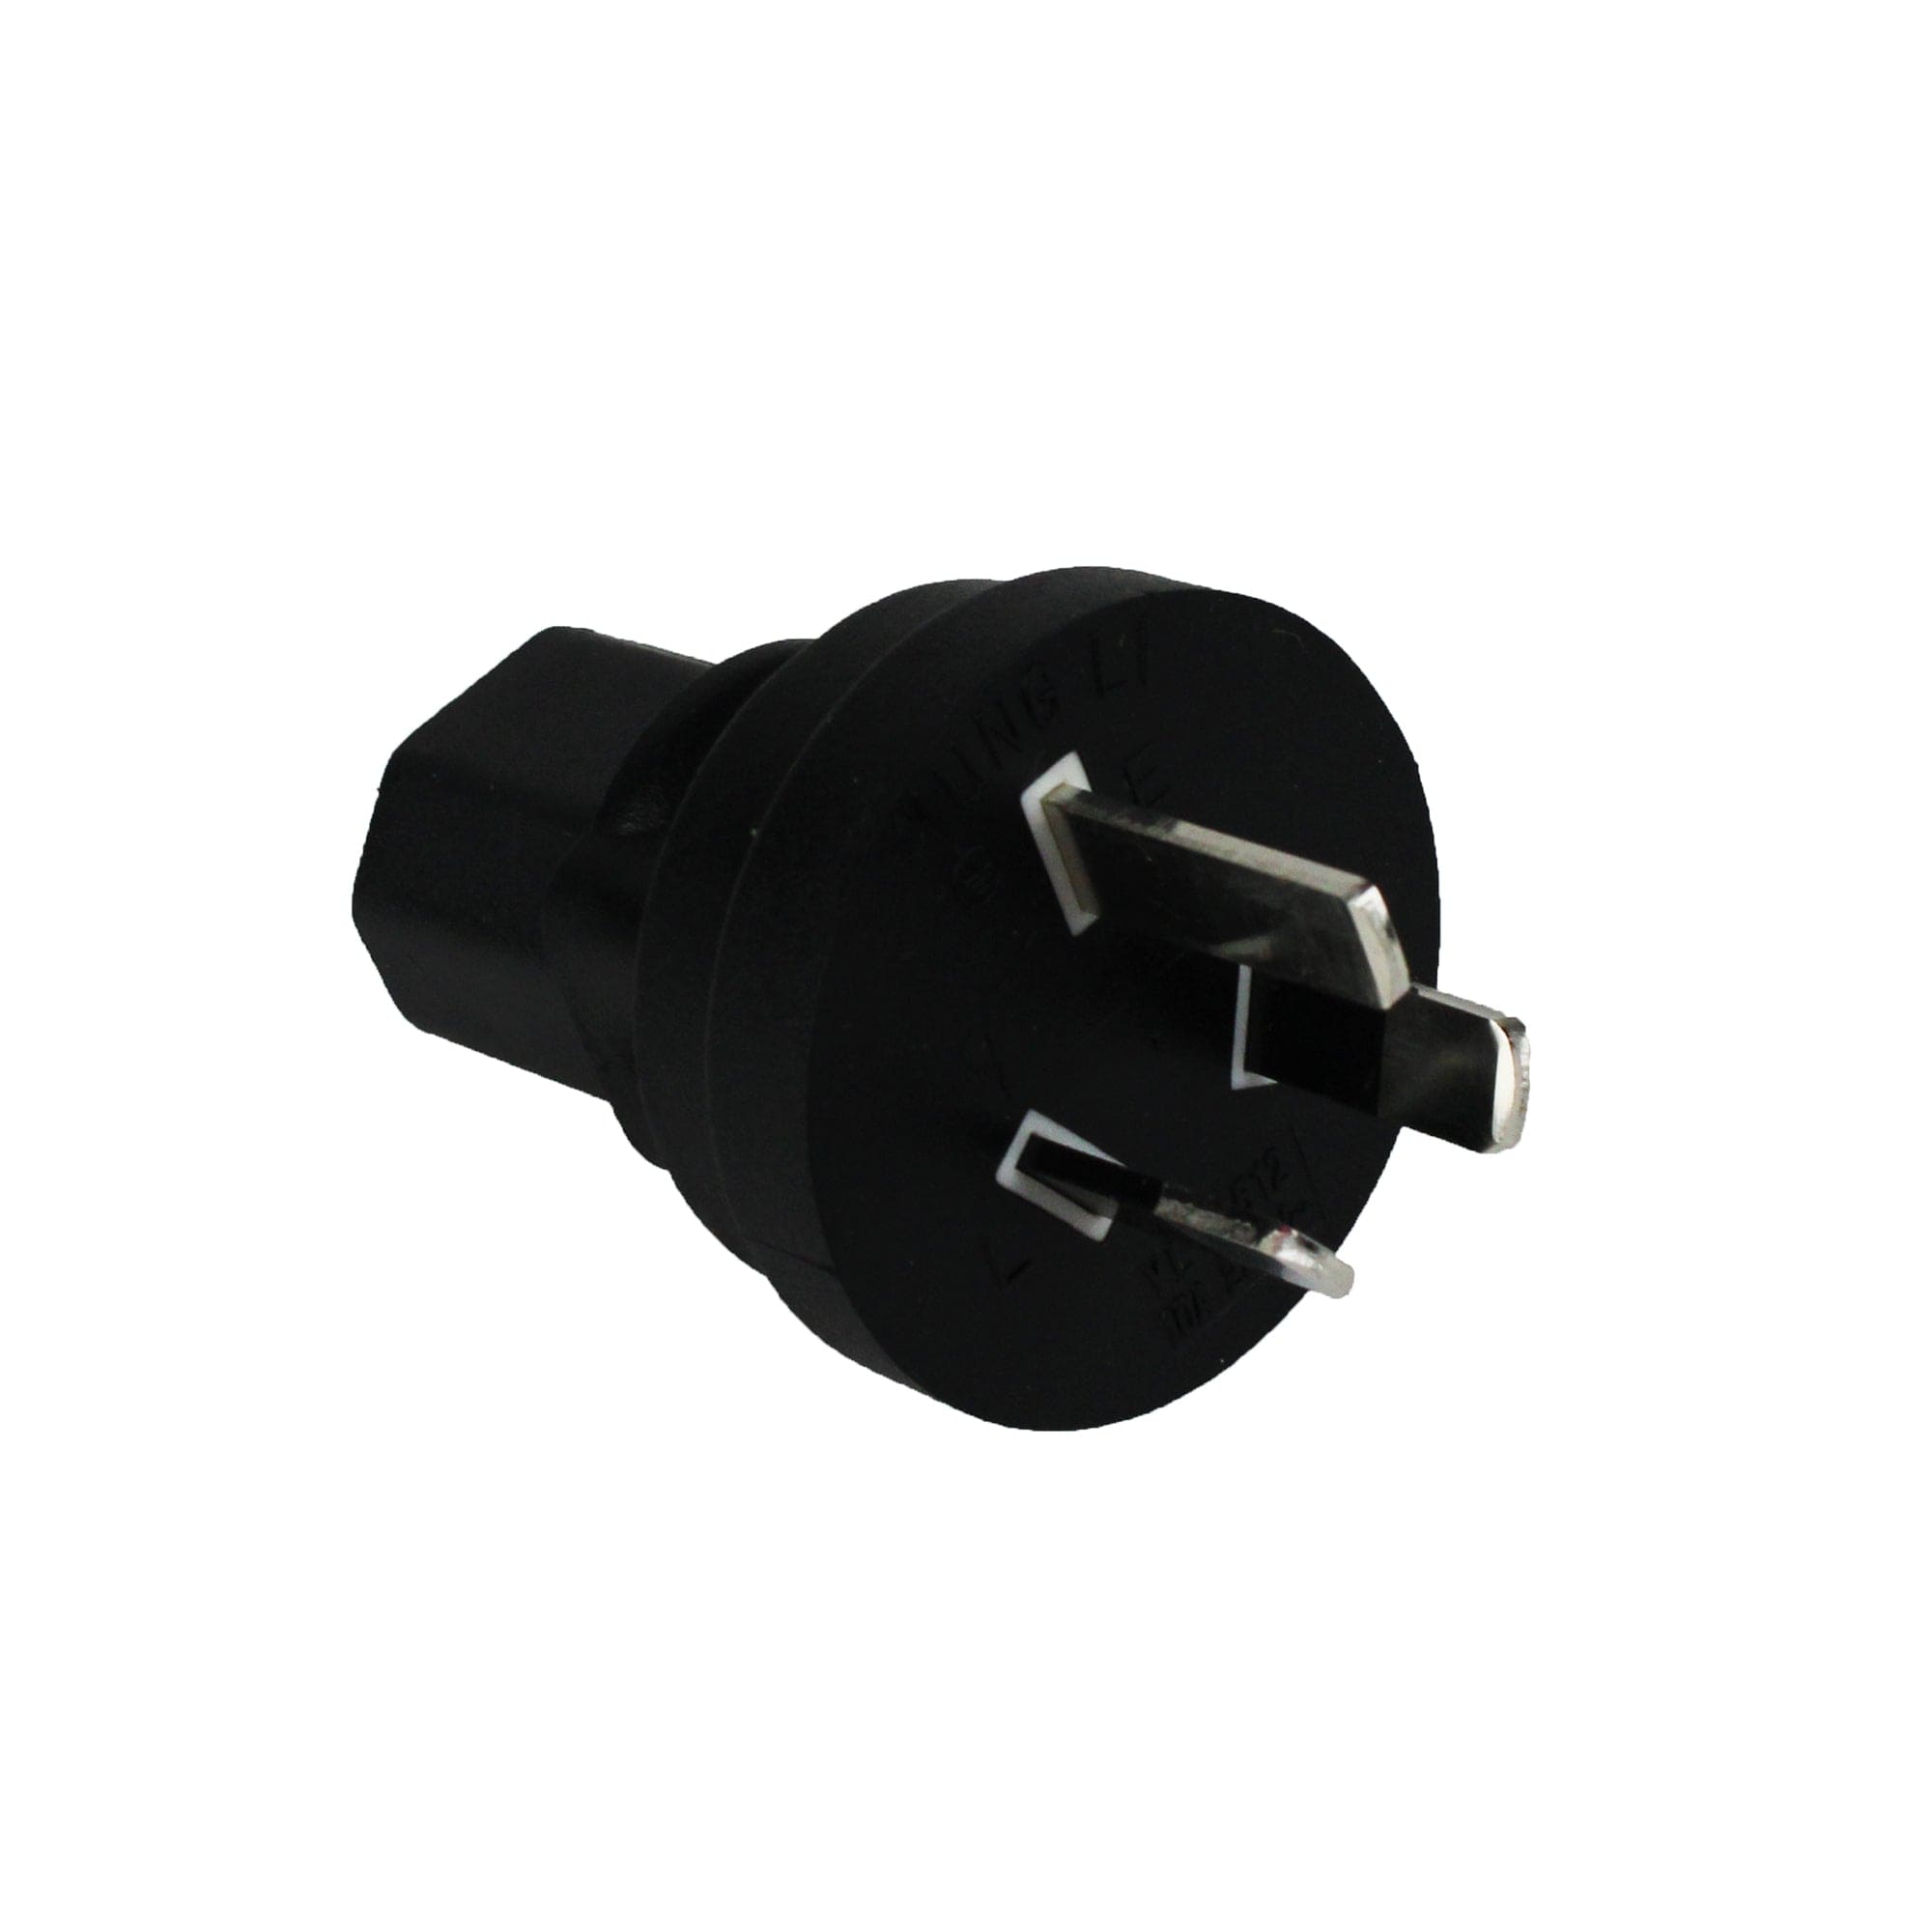 ProMariner 90130 C13 Plug Adapter â€“ Australia